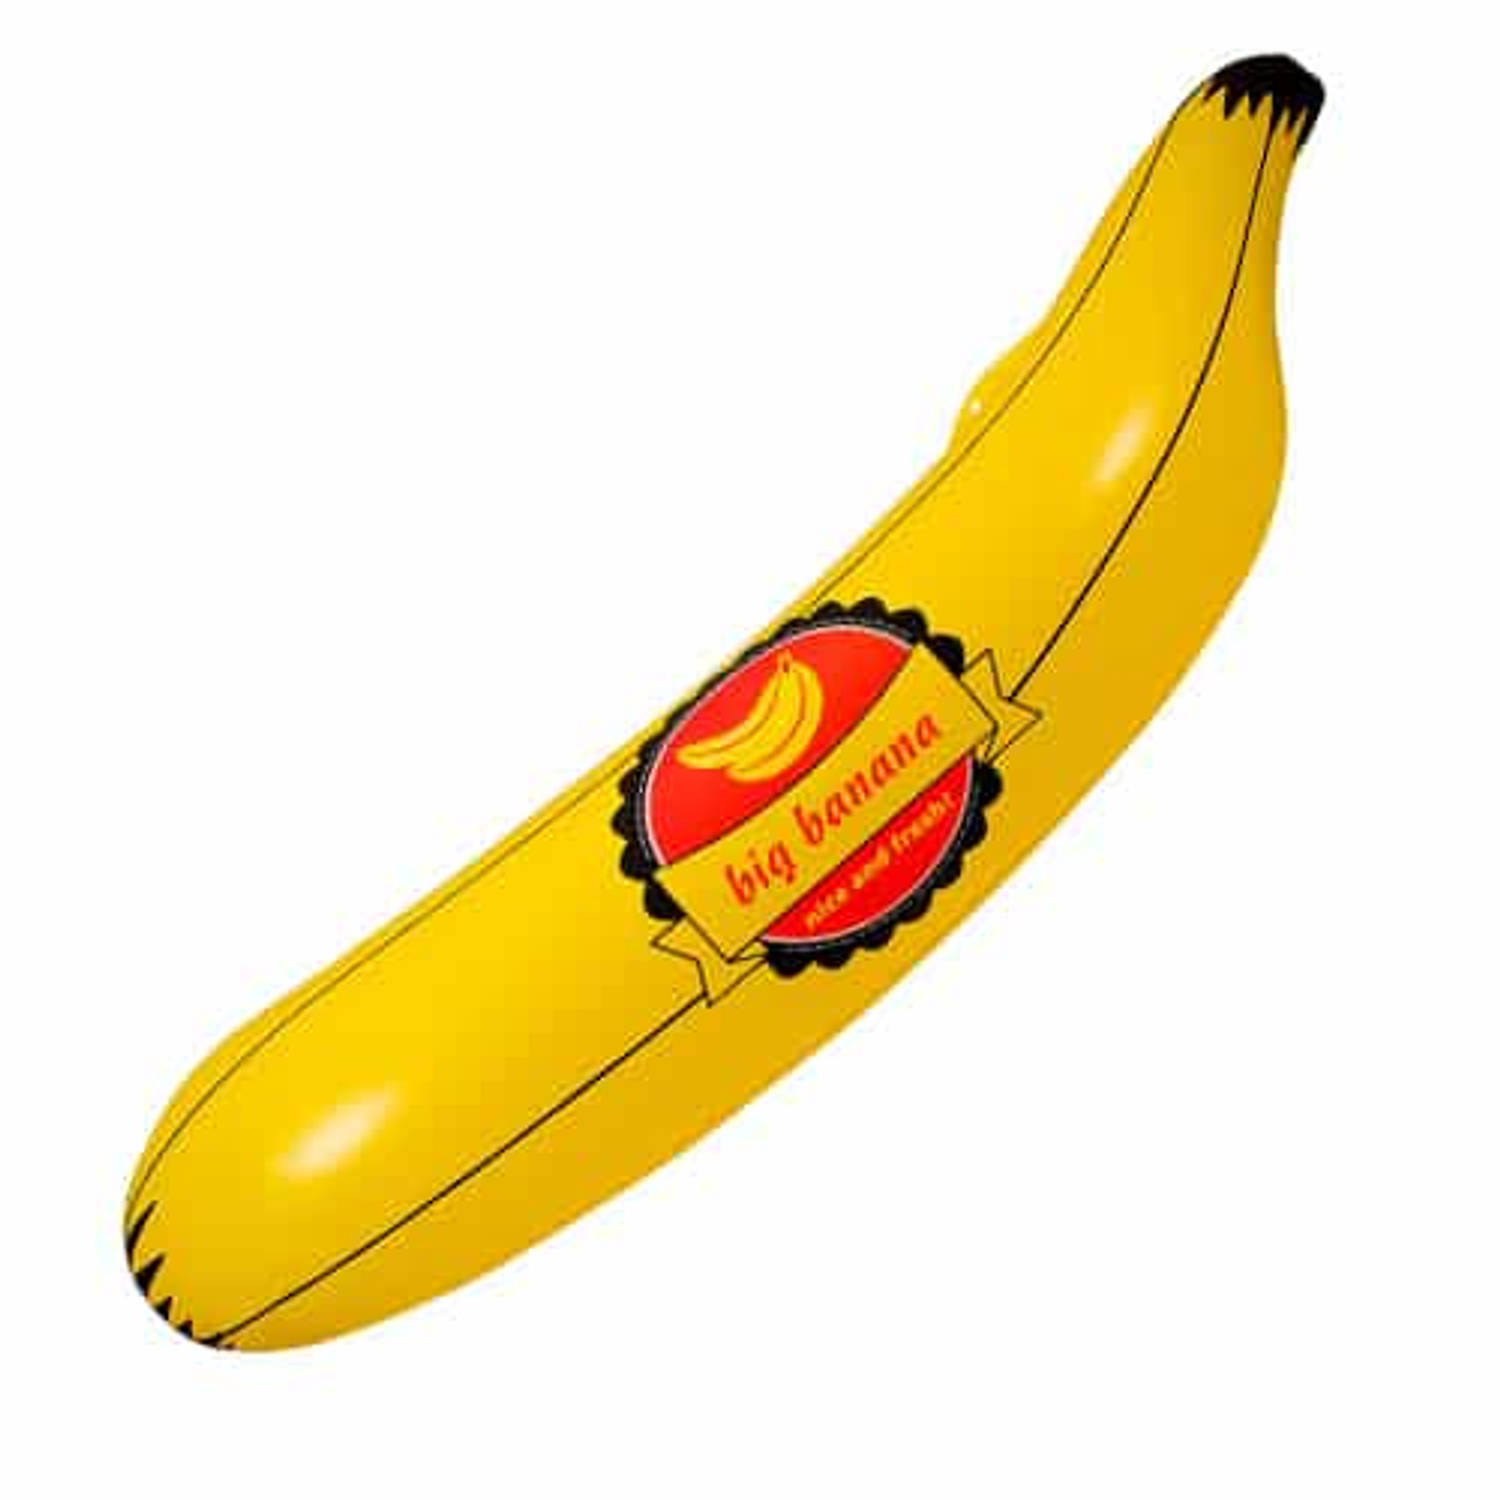 Feestbazaar Big Banana Opblaas 70cm online kopen